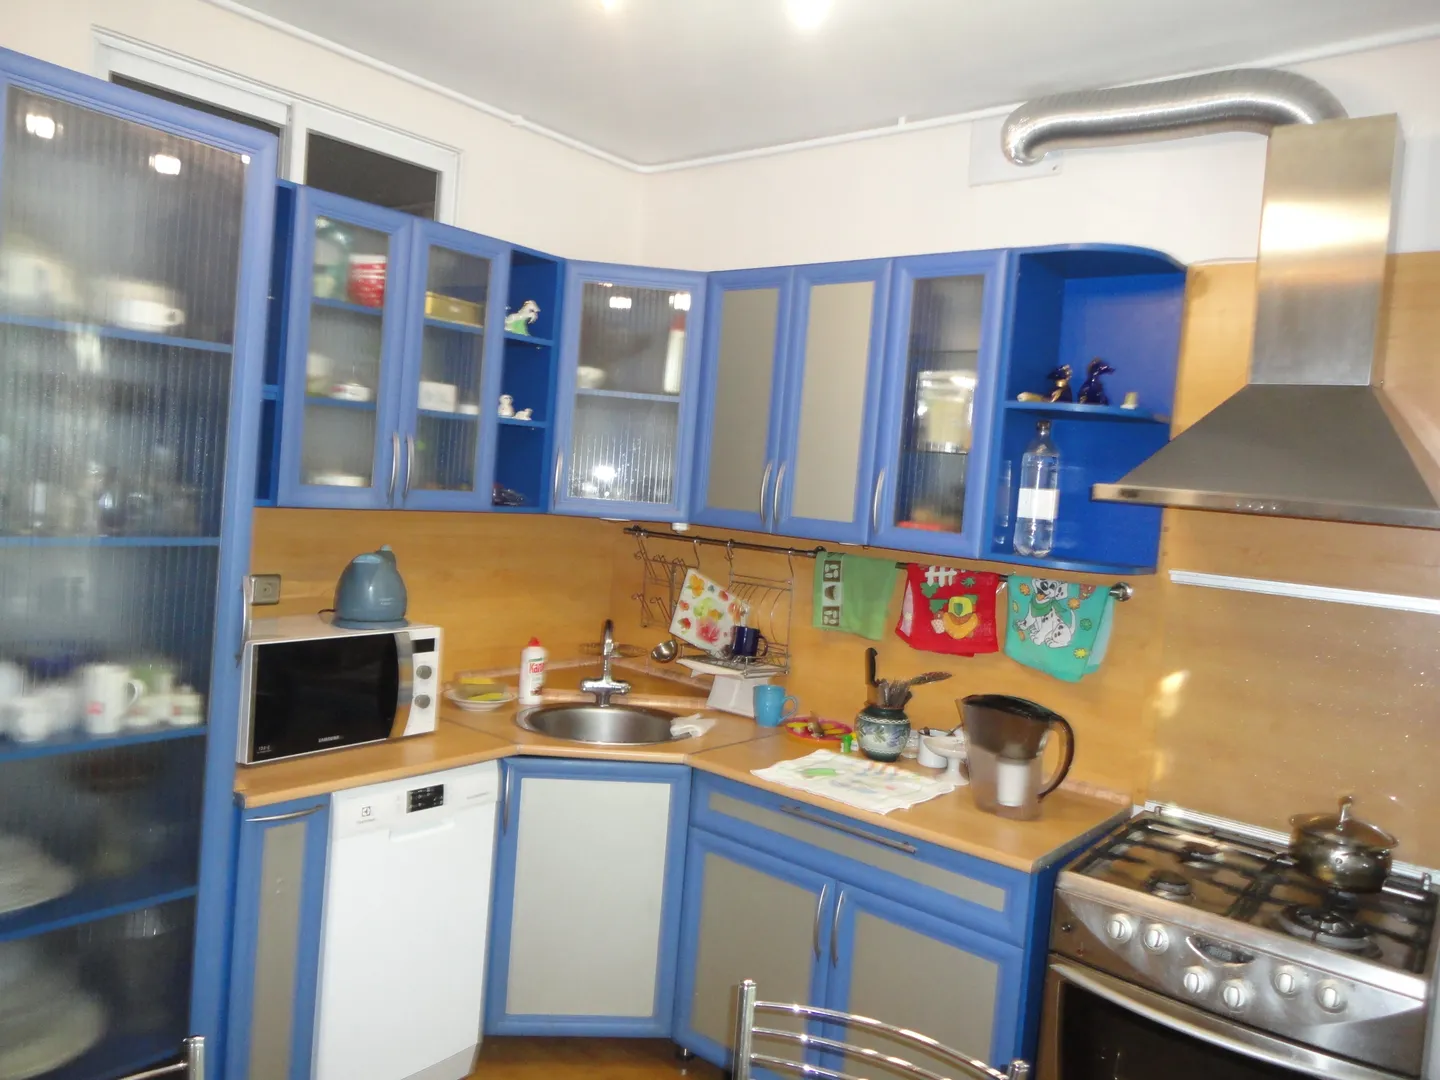 Кухня в синем цвете, современная газовая плита, мощная вытяжка, свежий ремонт, много света, все современное оборудование.